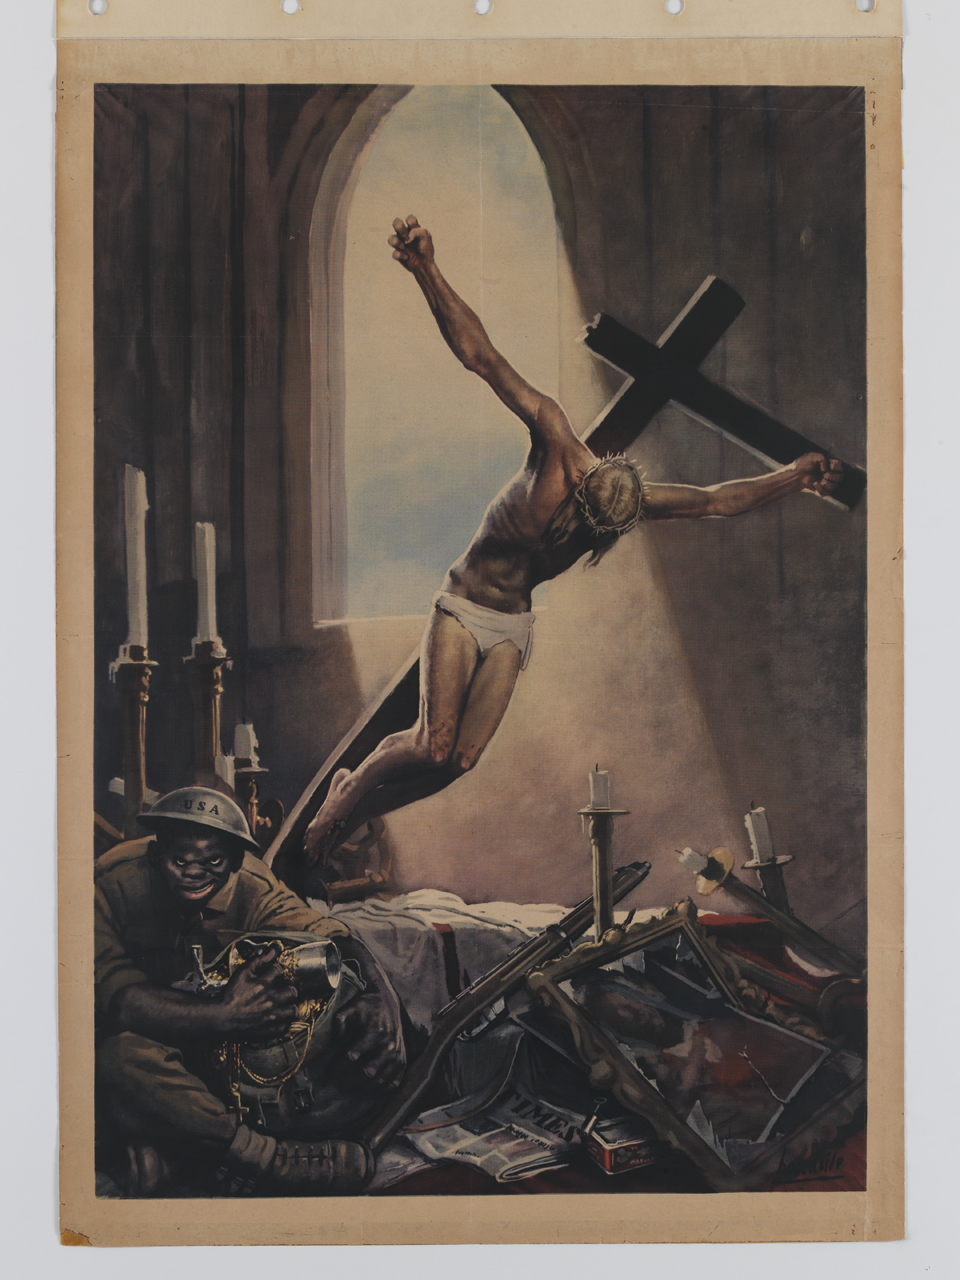 soldato americano di colore trafuga oggetti da una chiesa mentre un crocifisso cade a terra (manifesto) di Boccasile Gino (sec. XX)